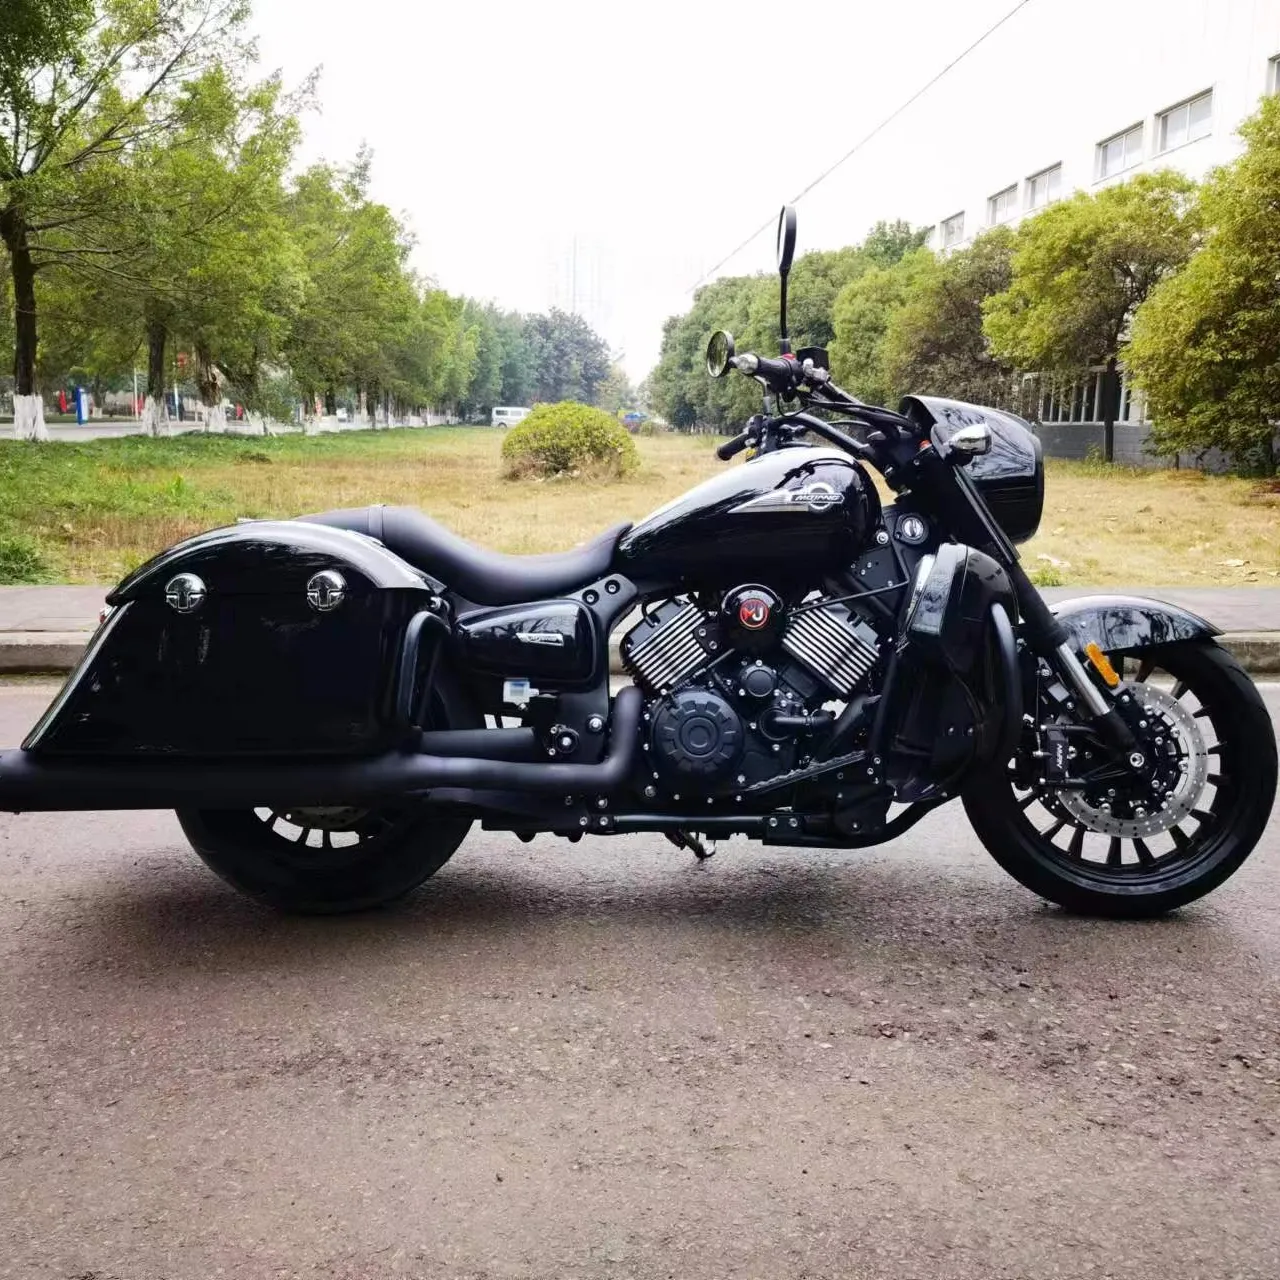 Atacado streebike 800cc motor sportbike moto do esporte para adulto moto bicicleta importação pesada motocicleta de corrida da china on-line